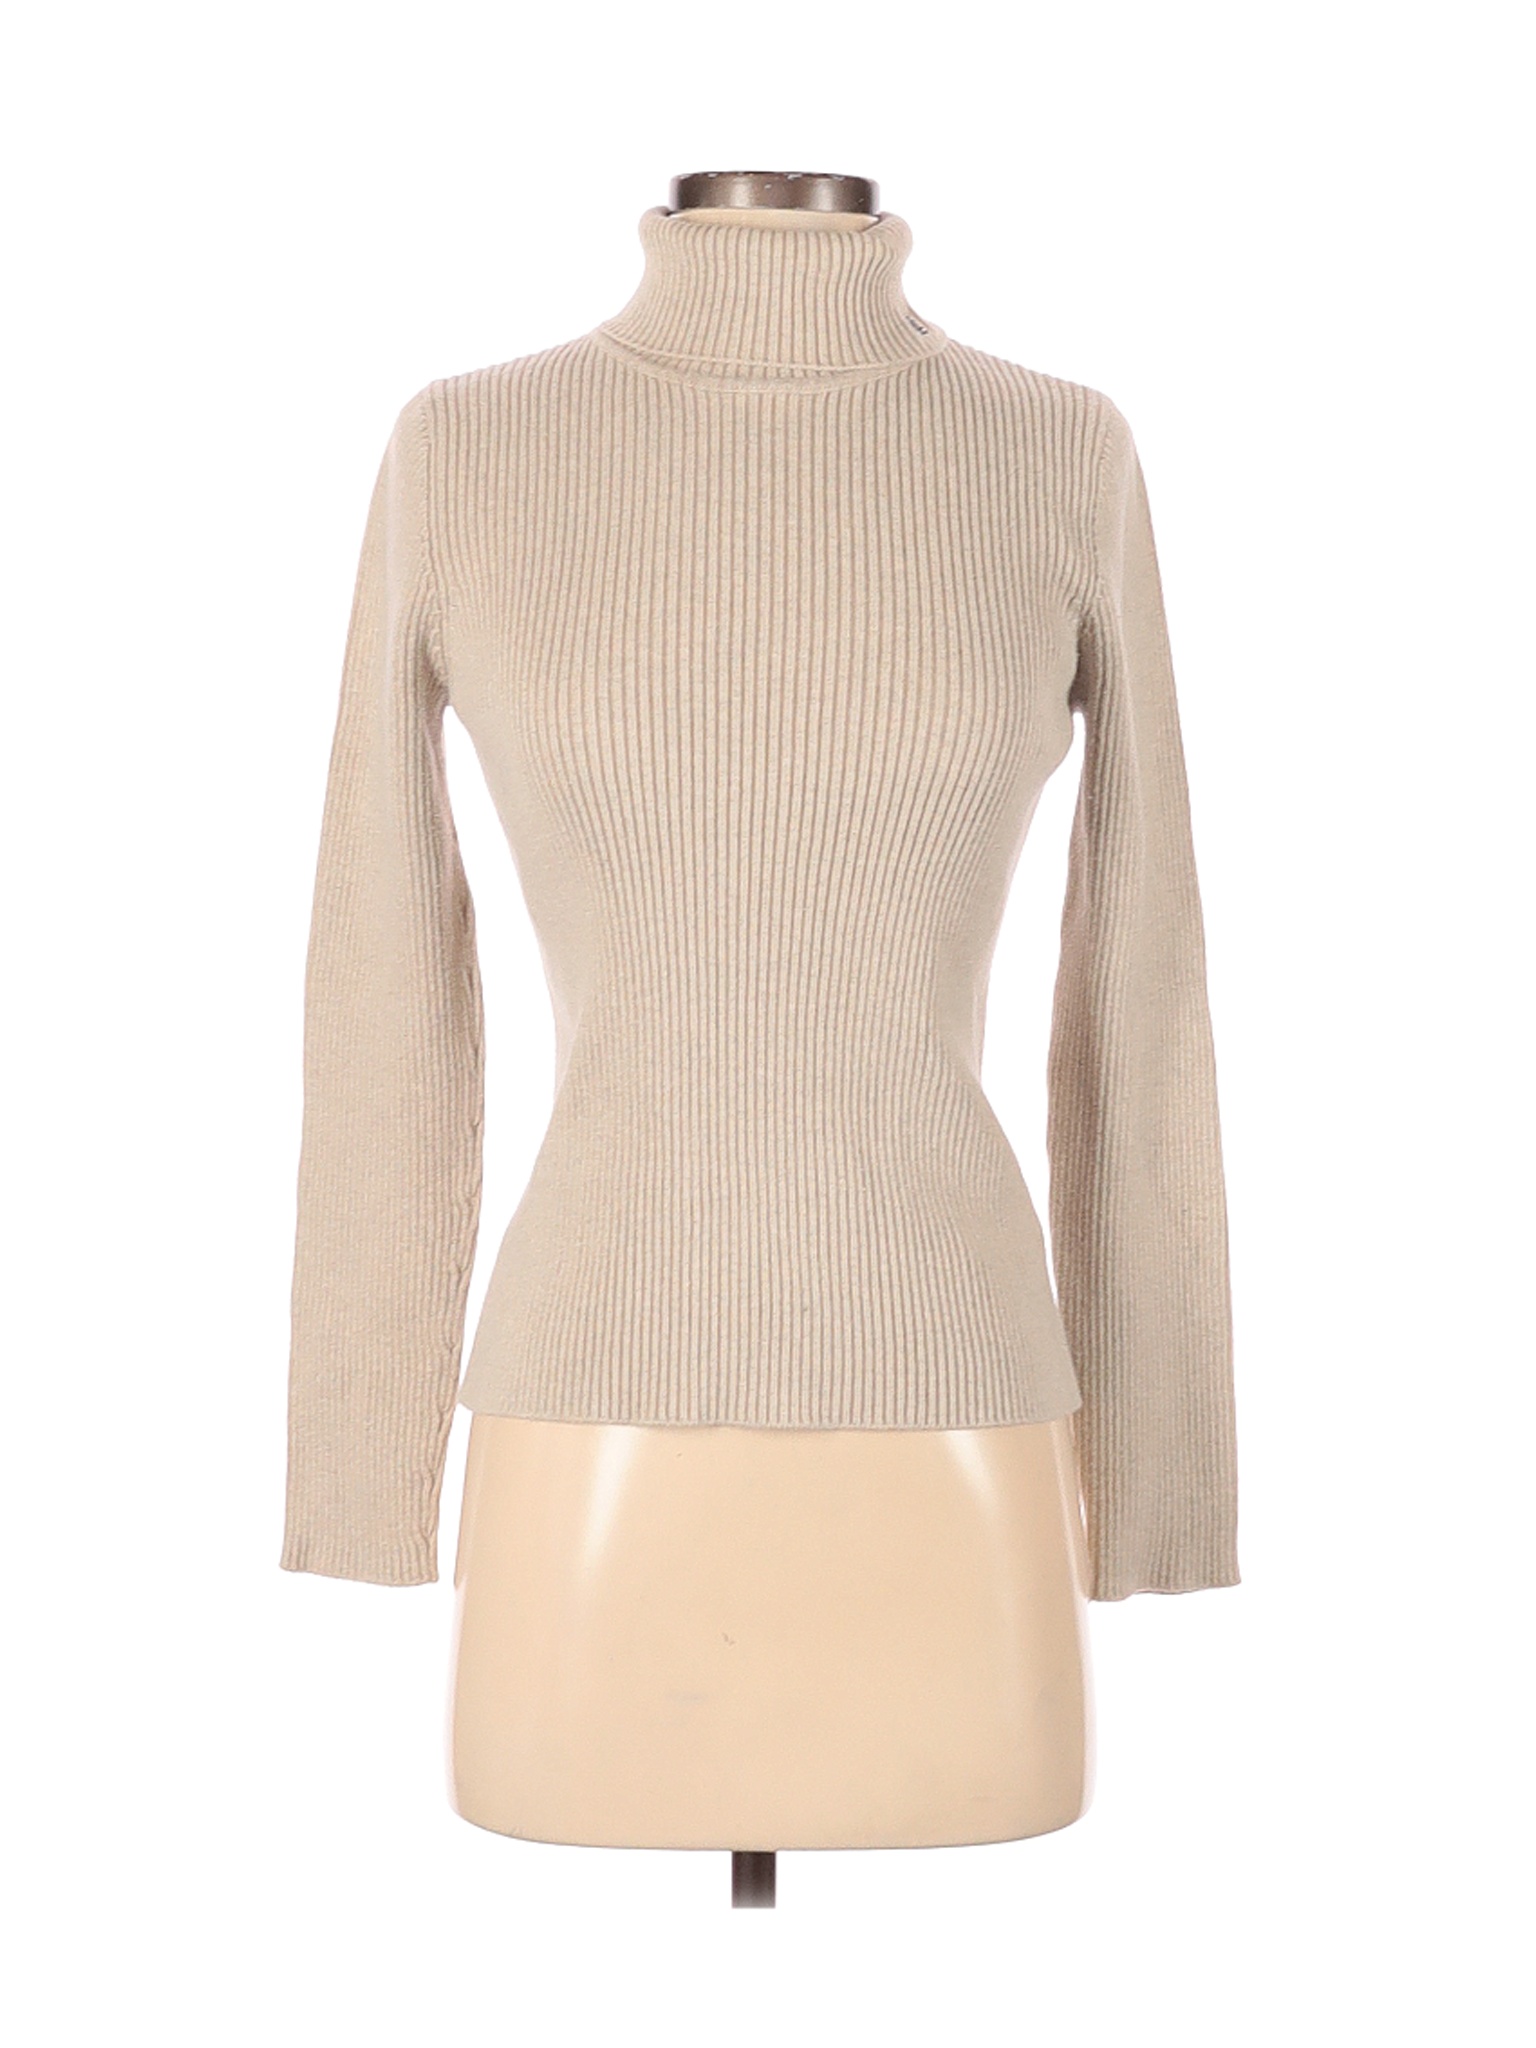 Lauren by Ralph Lauren Women Brown Turtleneck Sweater S | eBay